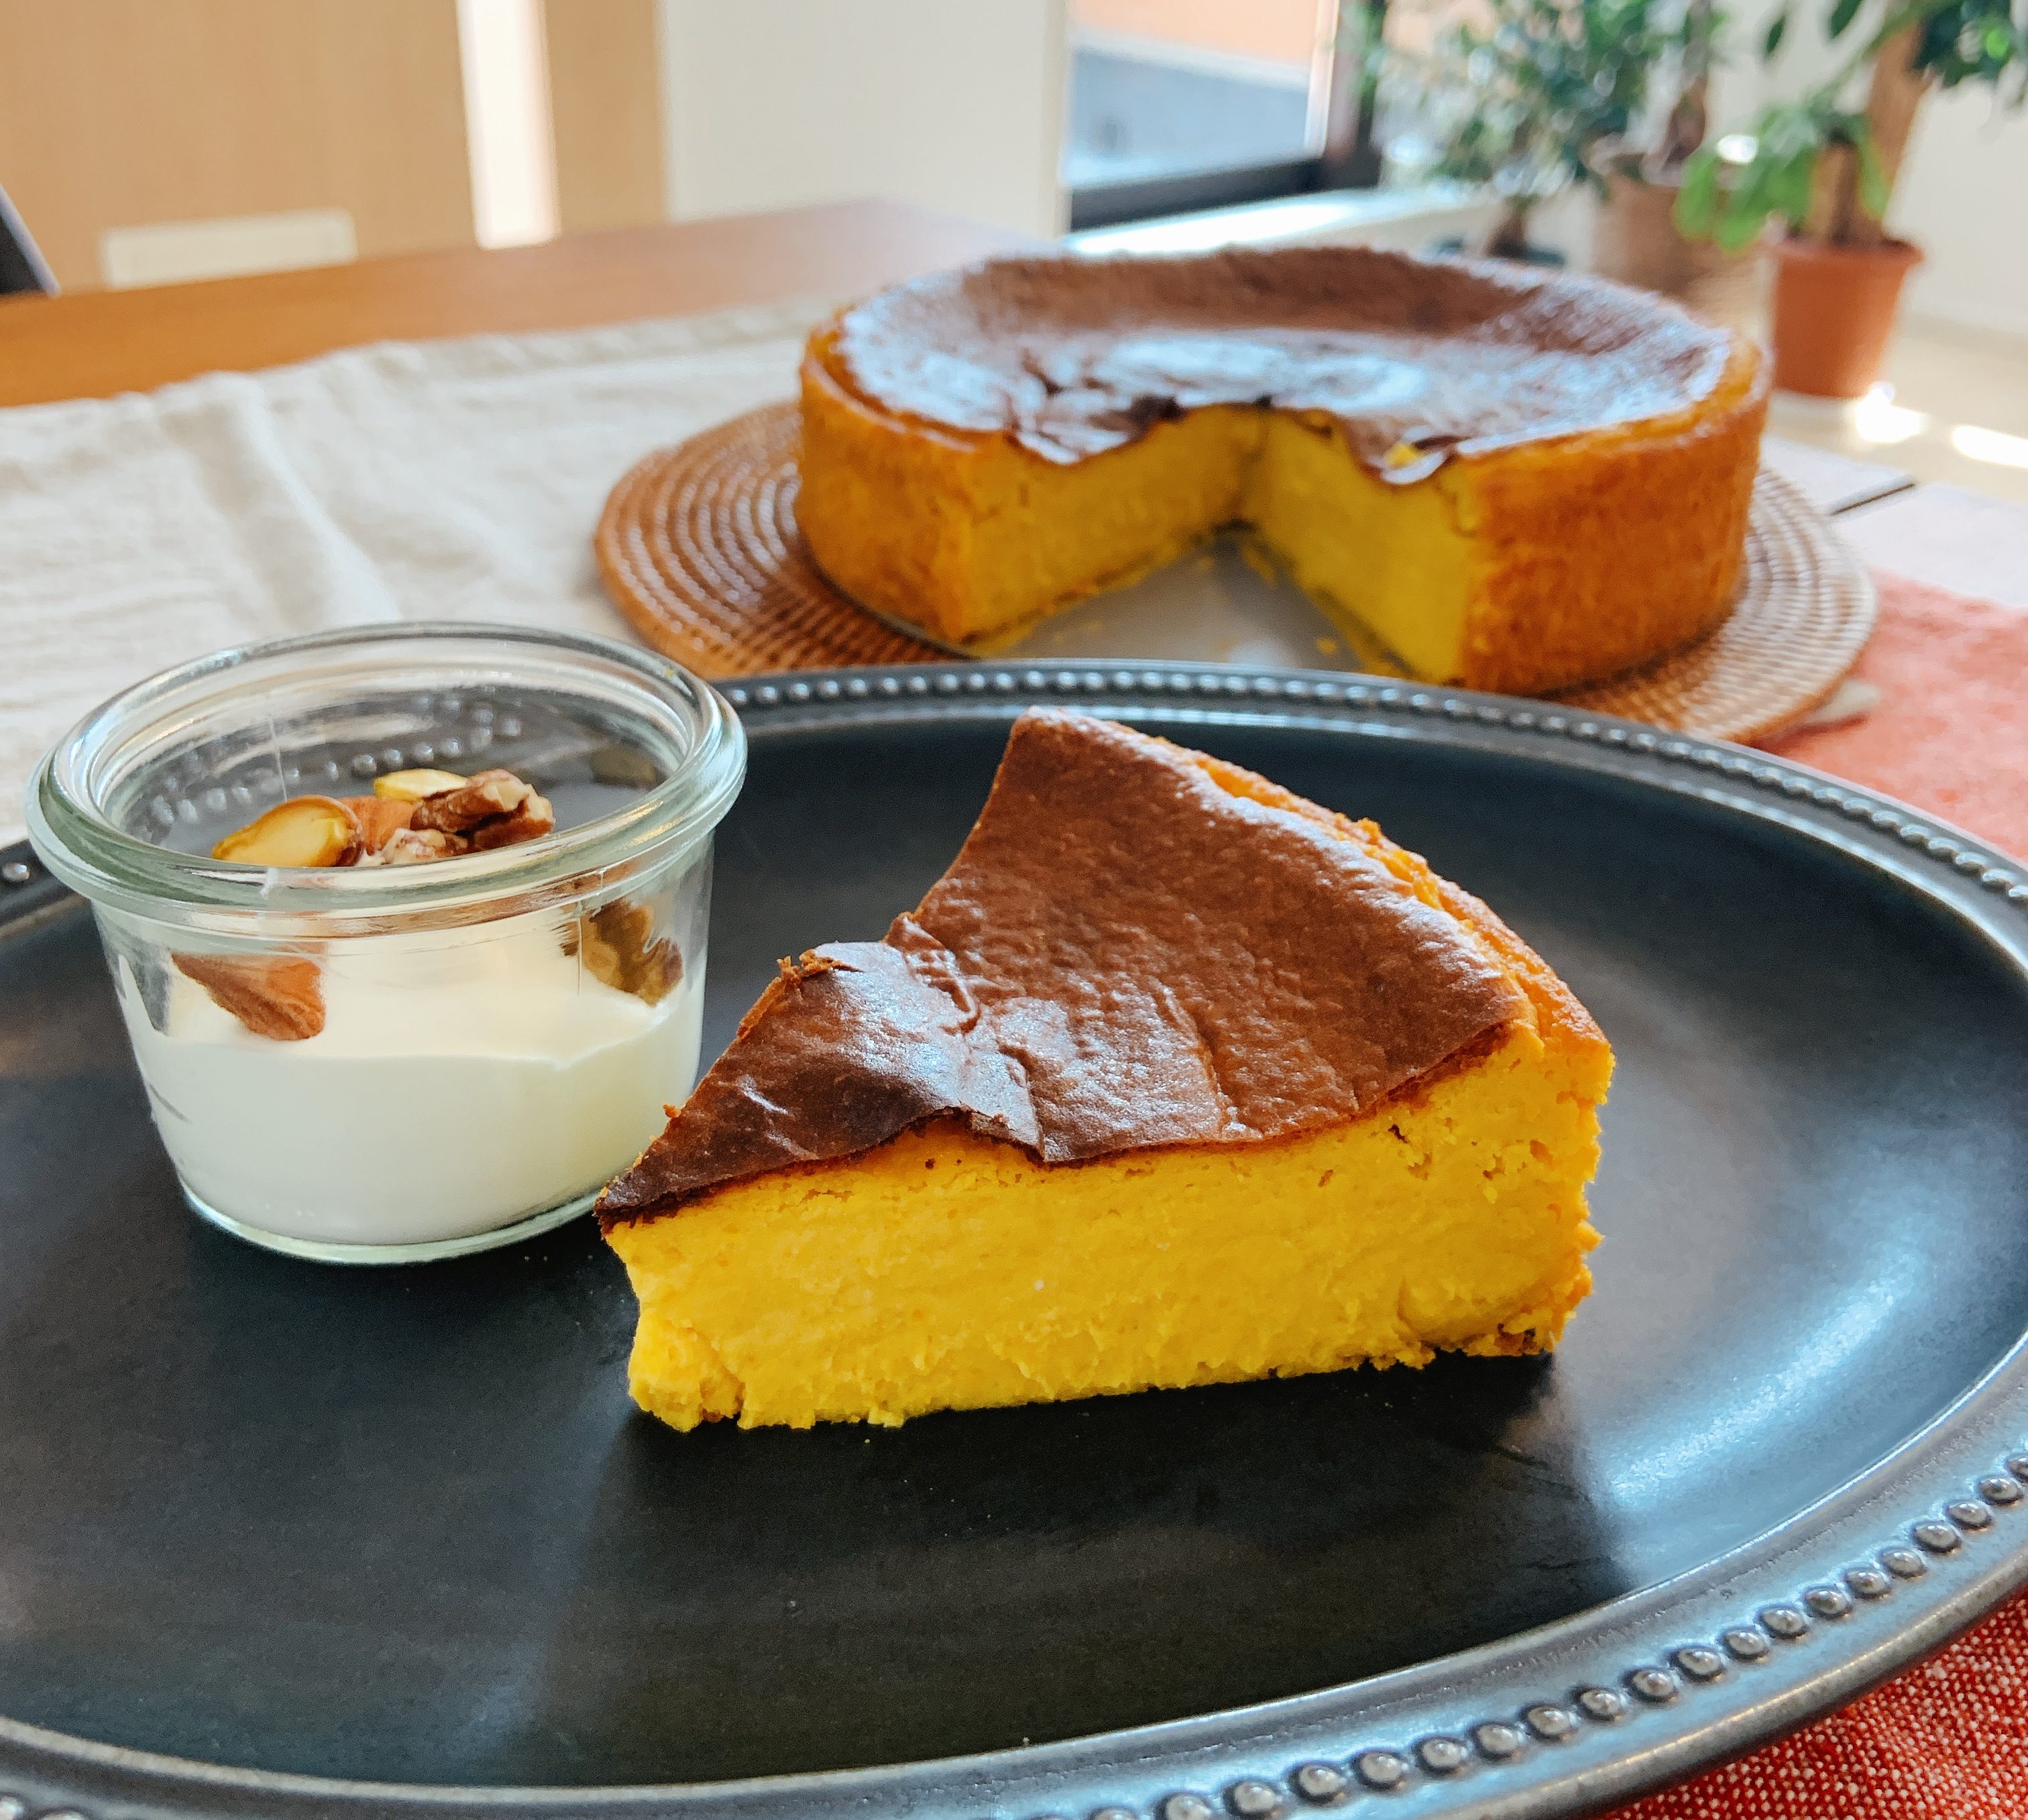 かぼちゃのベイクドチーズケーキ ミキサーで簡単 管理栄養士 豊永彩子のサイト